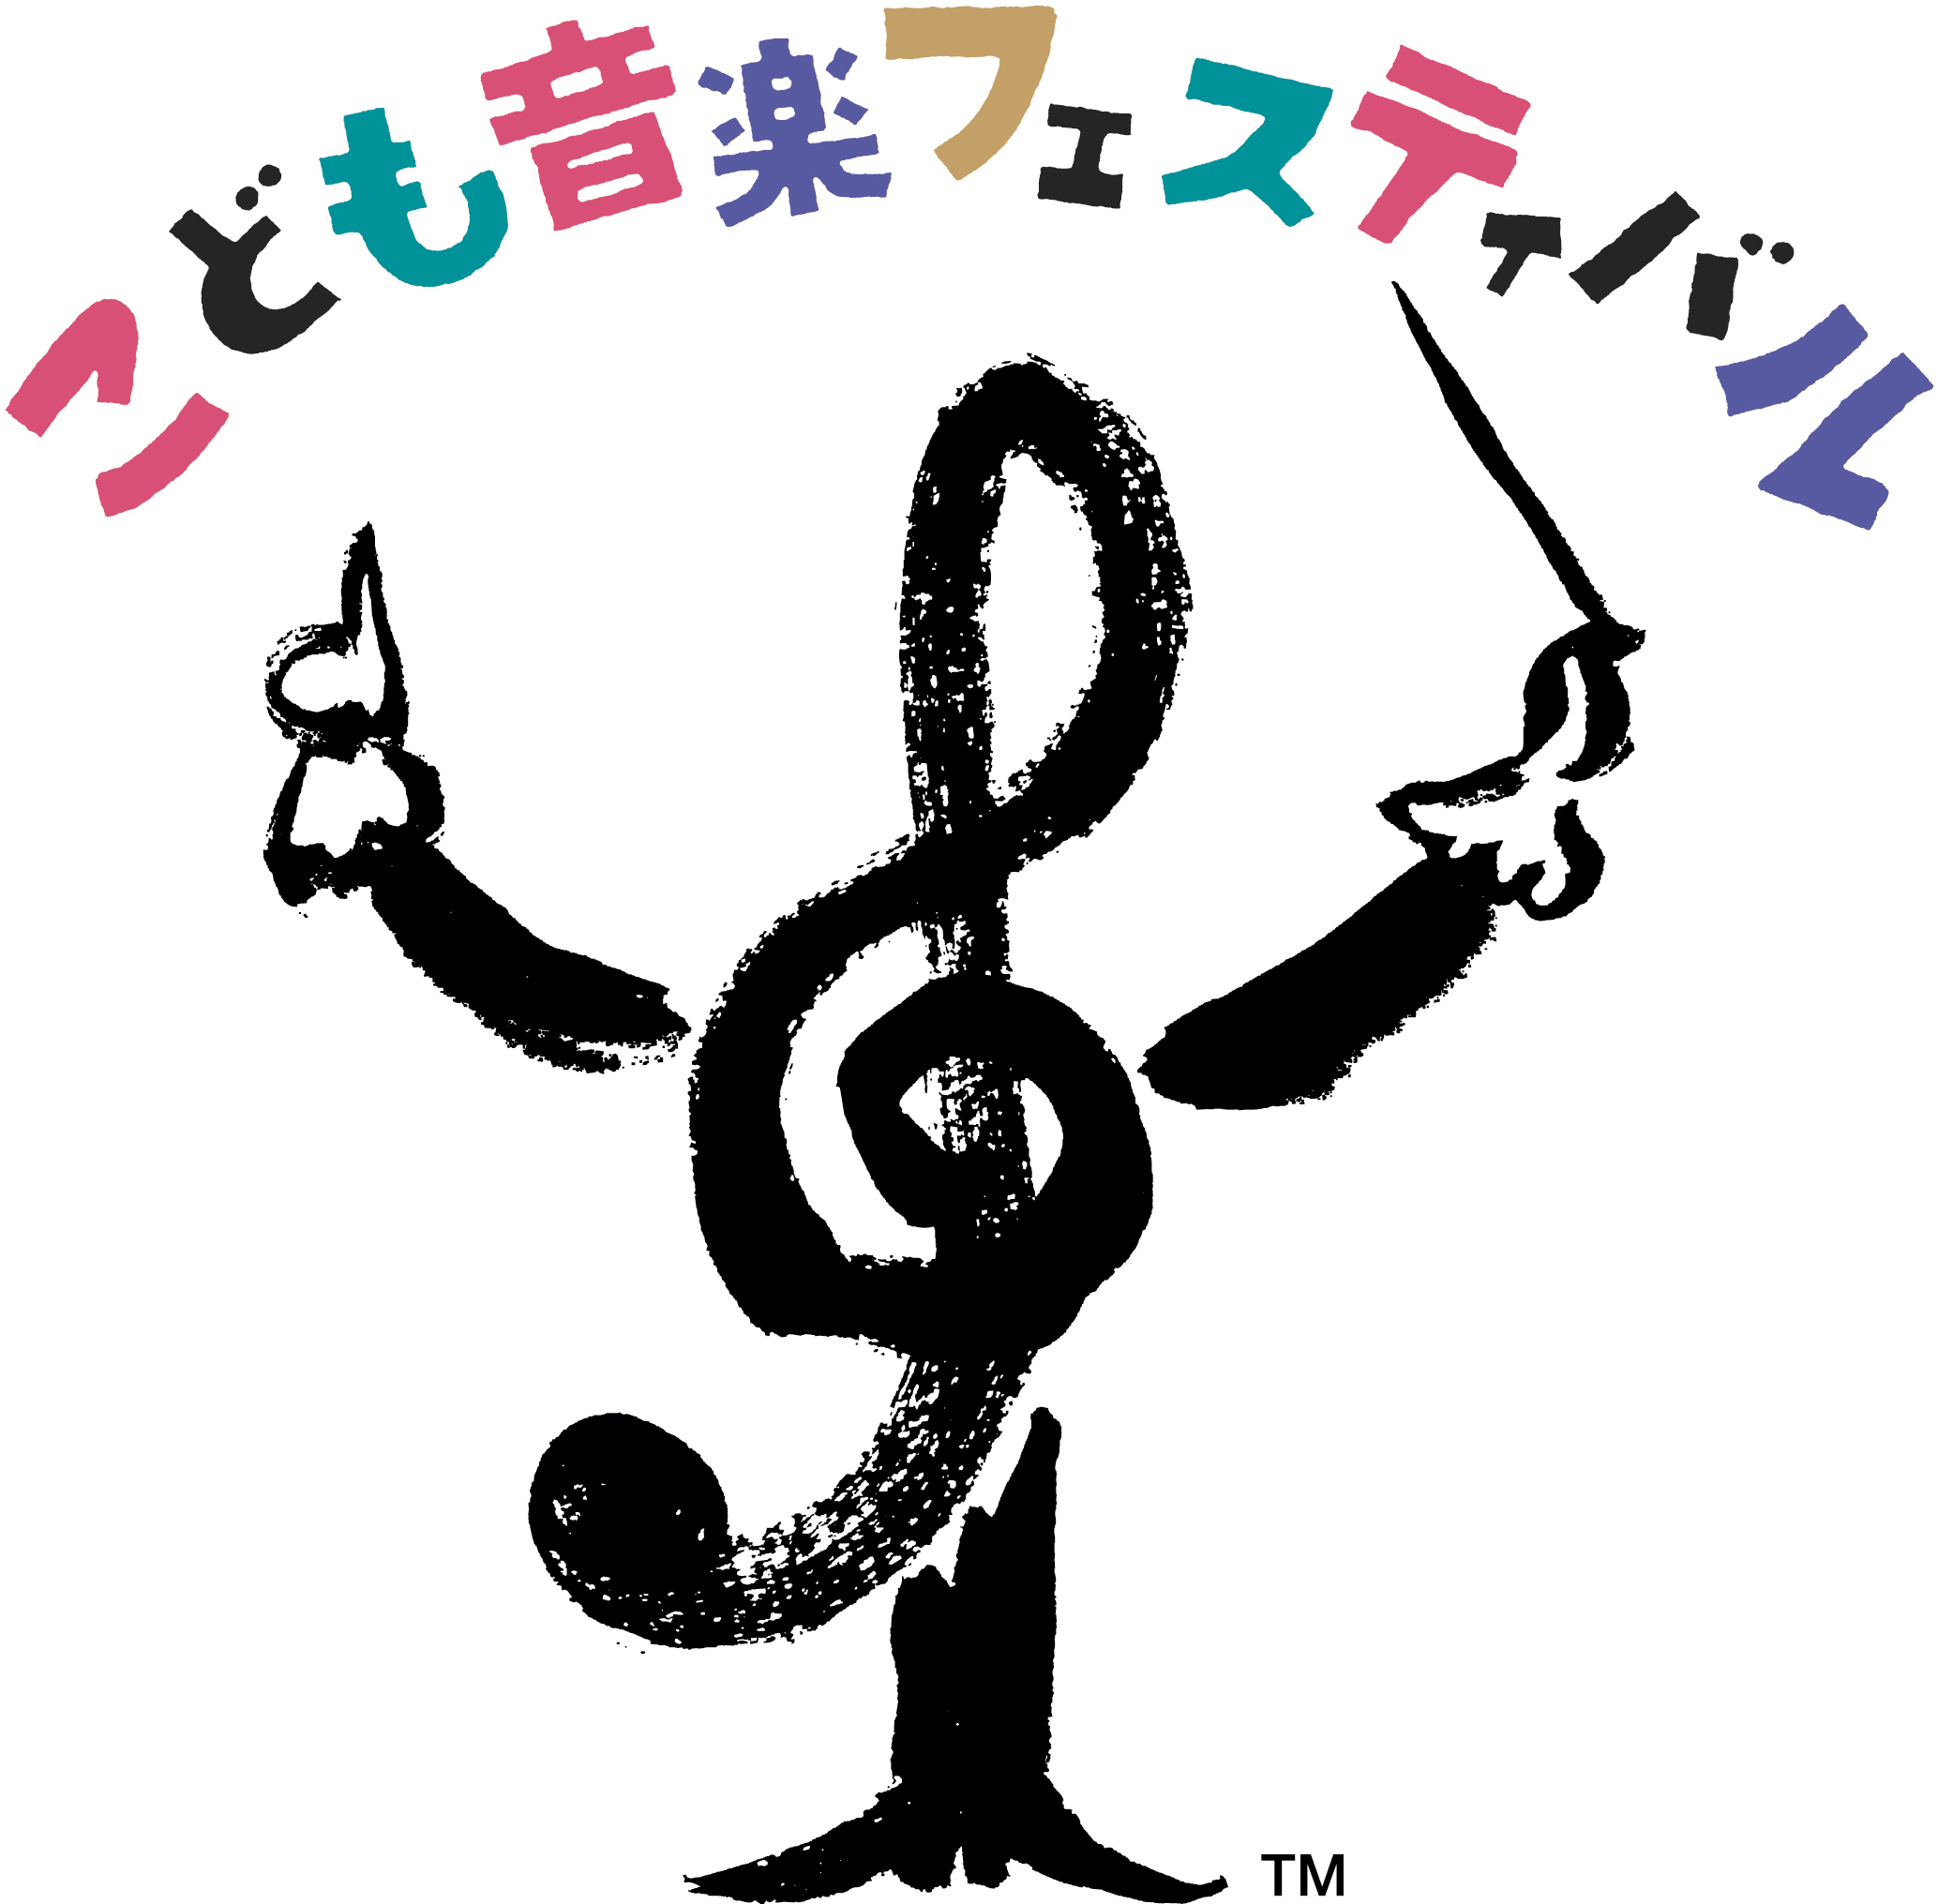 0歳まえから楽しめるクラシックの祭典 こども音楽フェスティバル 2020年夏 東京で開催決定 Spice エンタメ特化型情報メディア スパイス